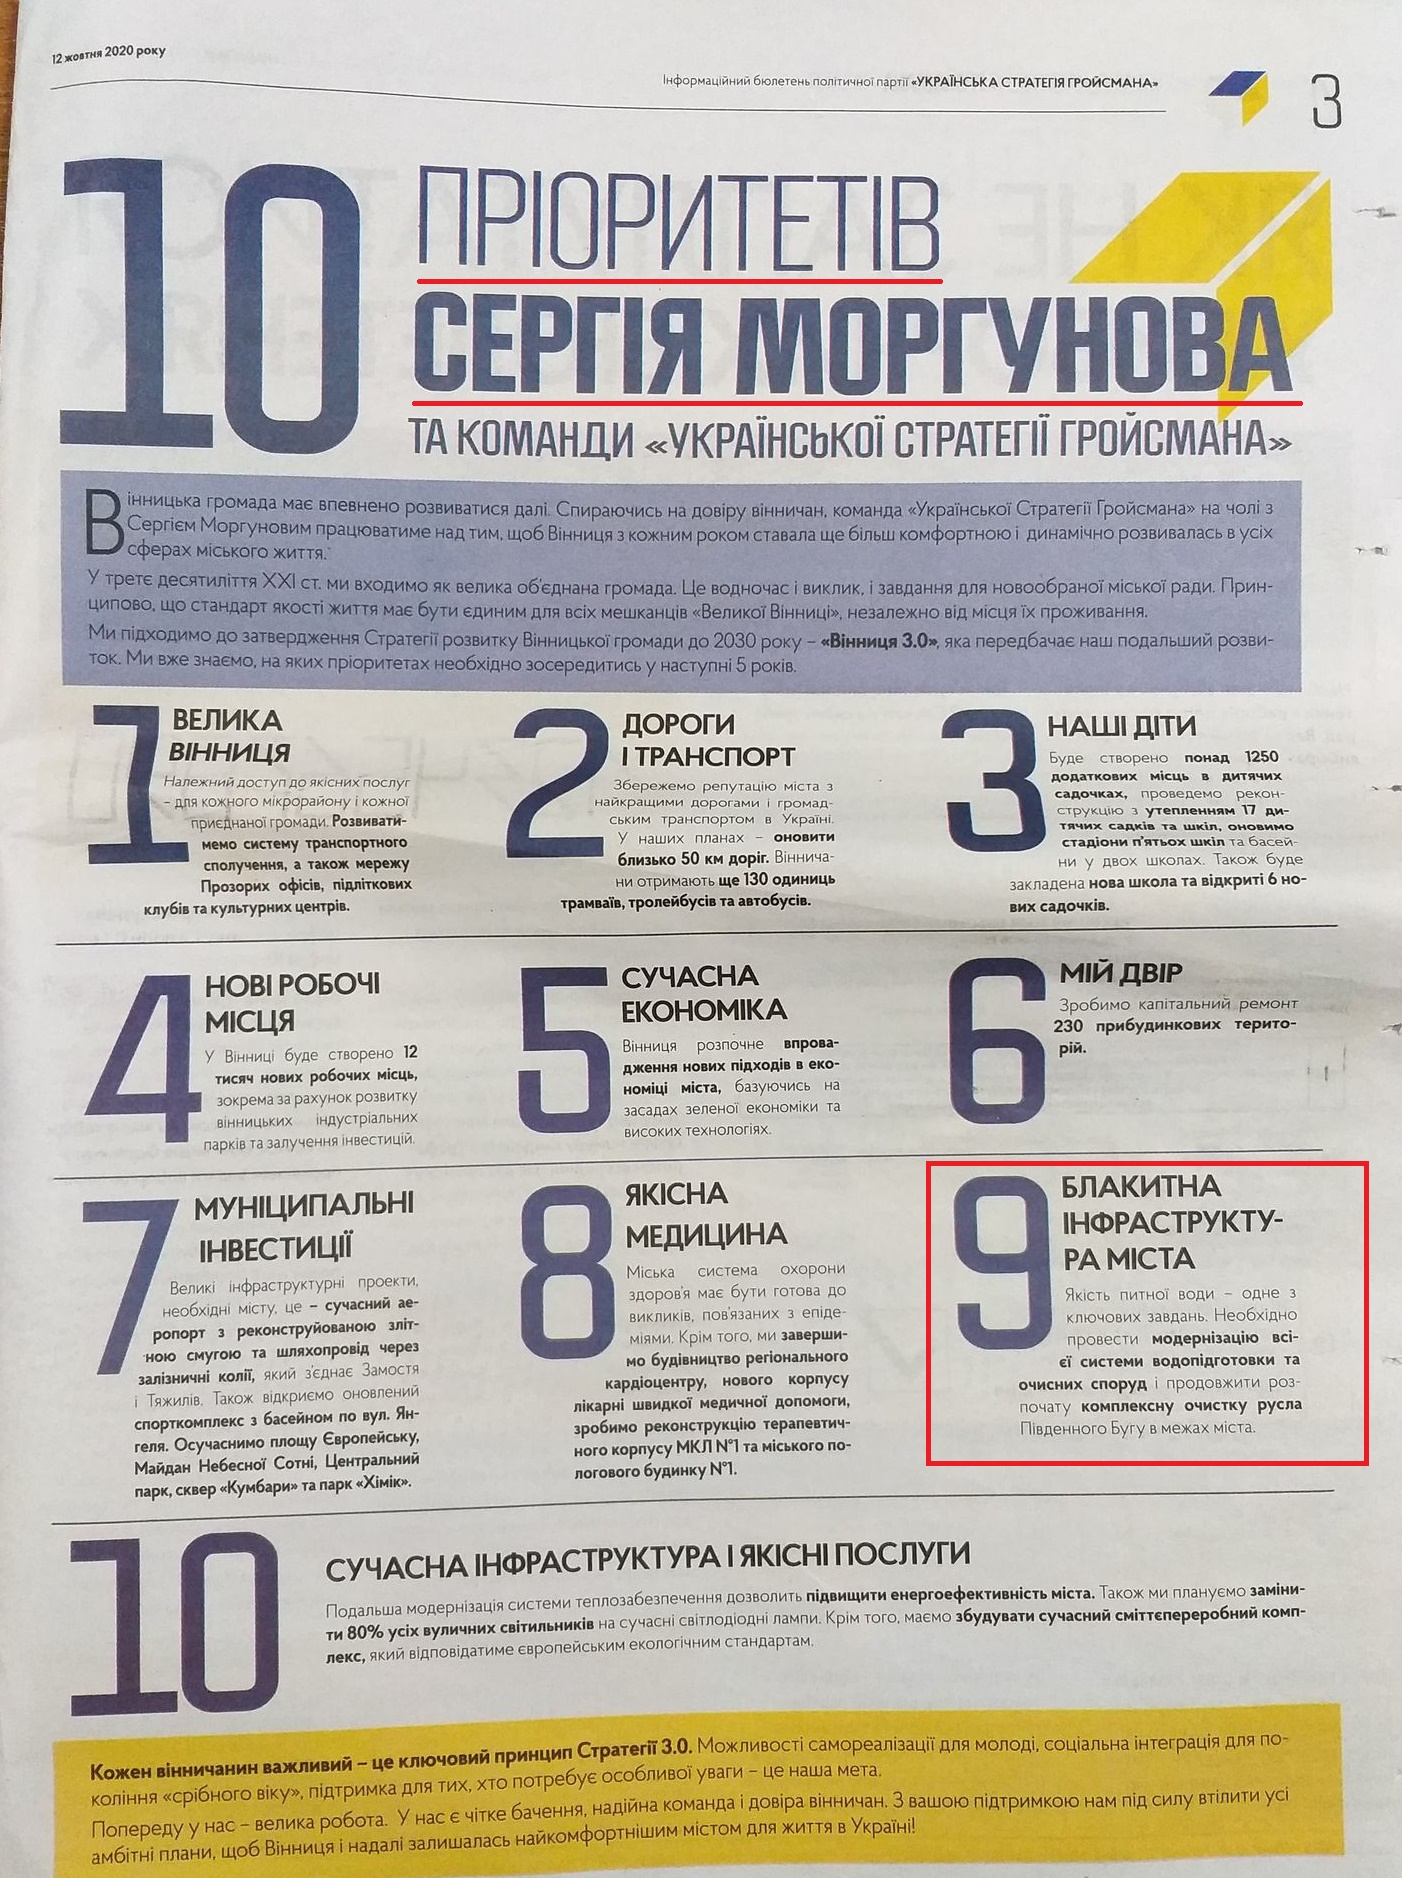 Передвиборча програма кандидата на посаду міського голови Сергія Моргунова